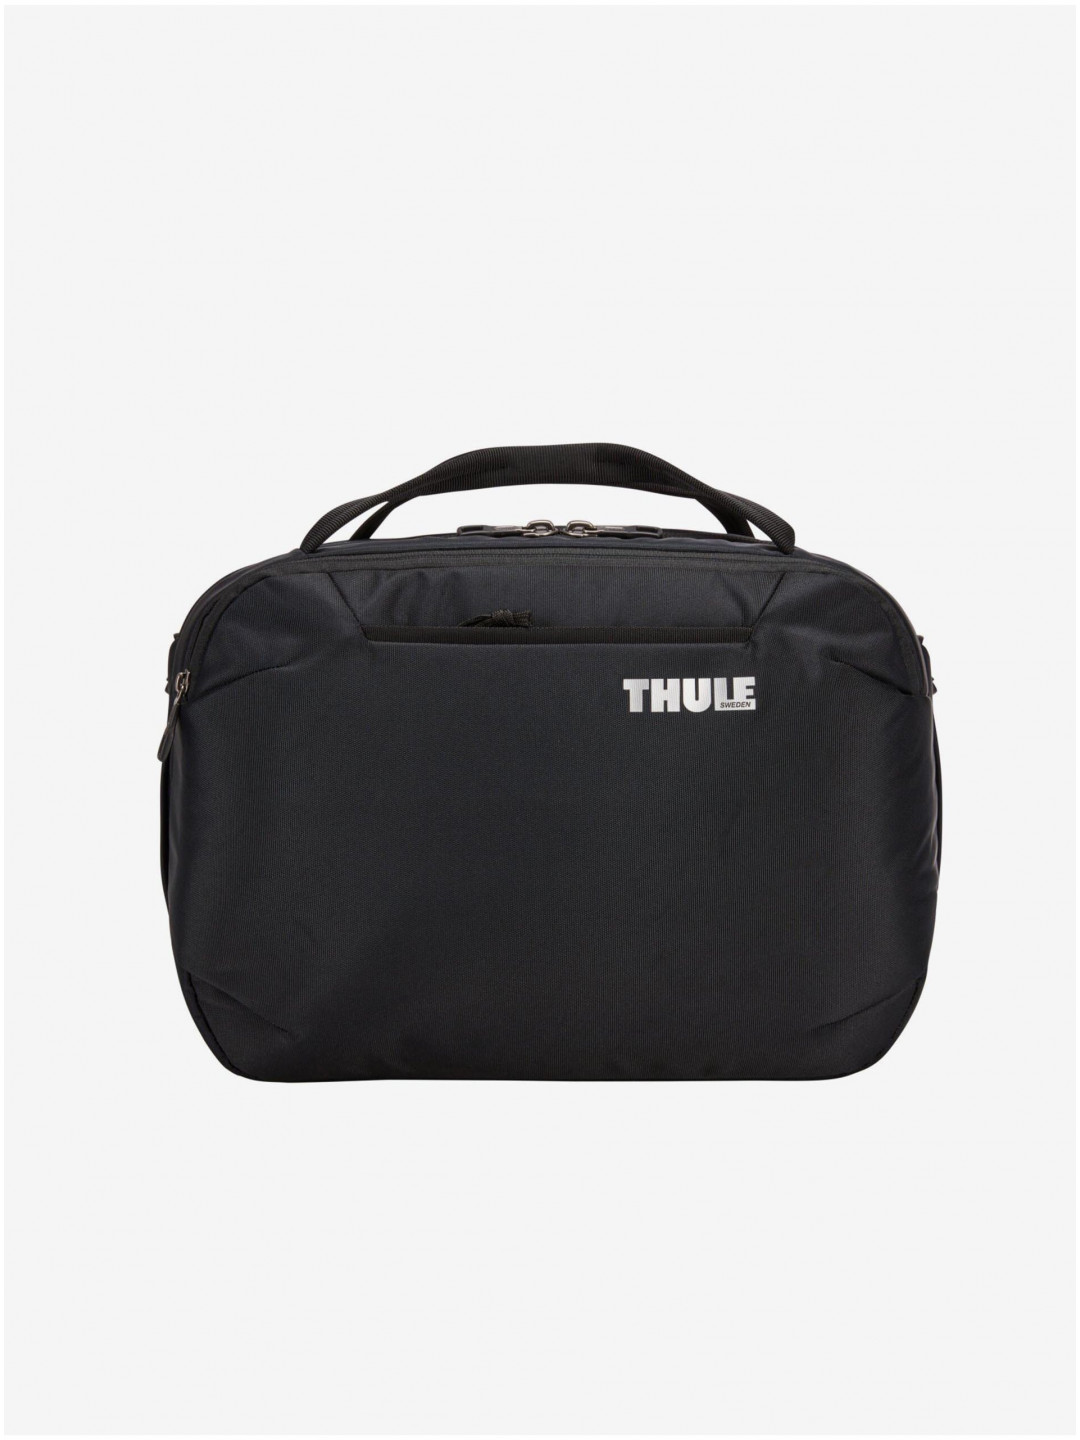 Černá cestovní taška Thule Subterra